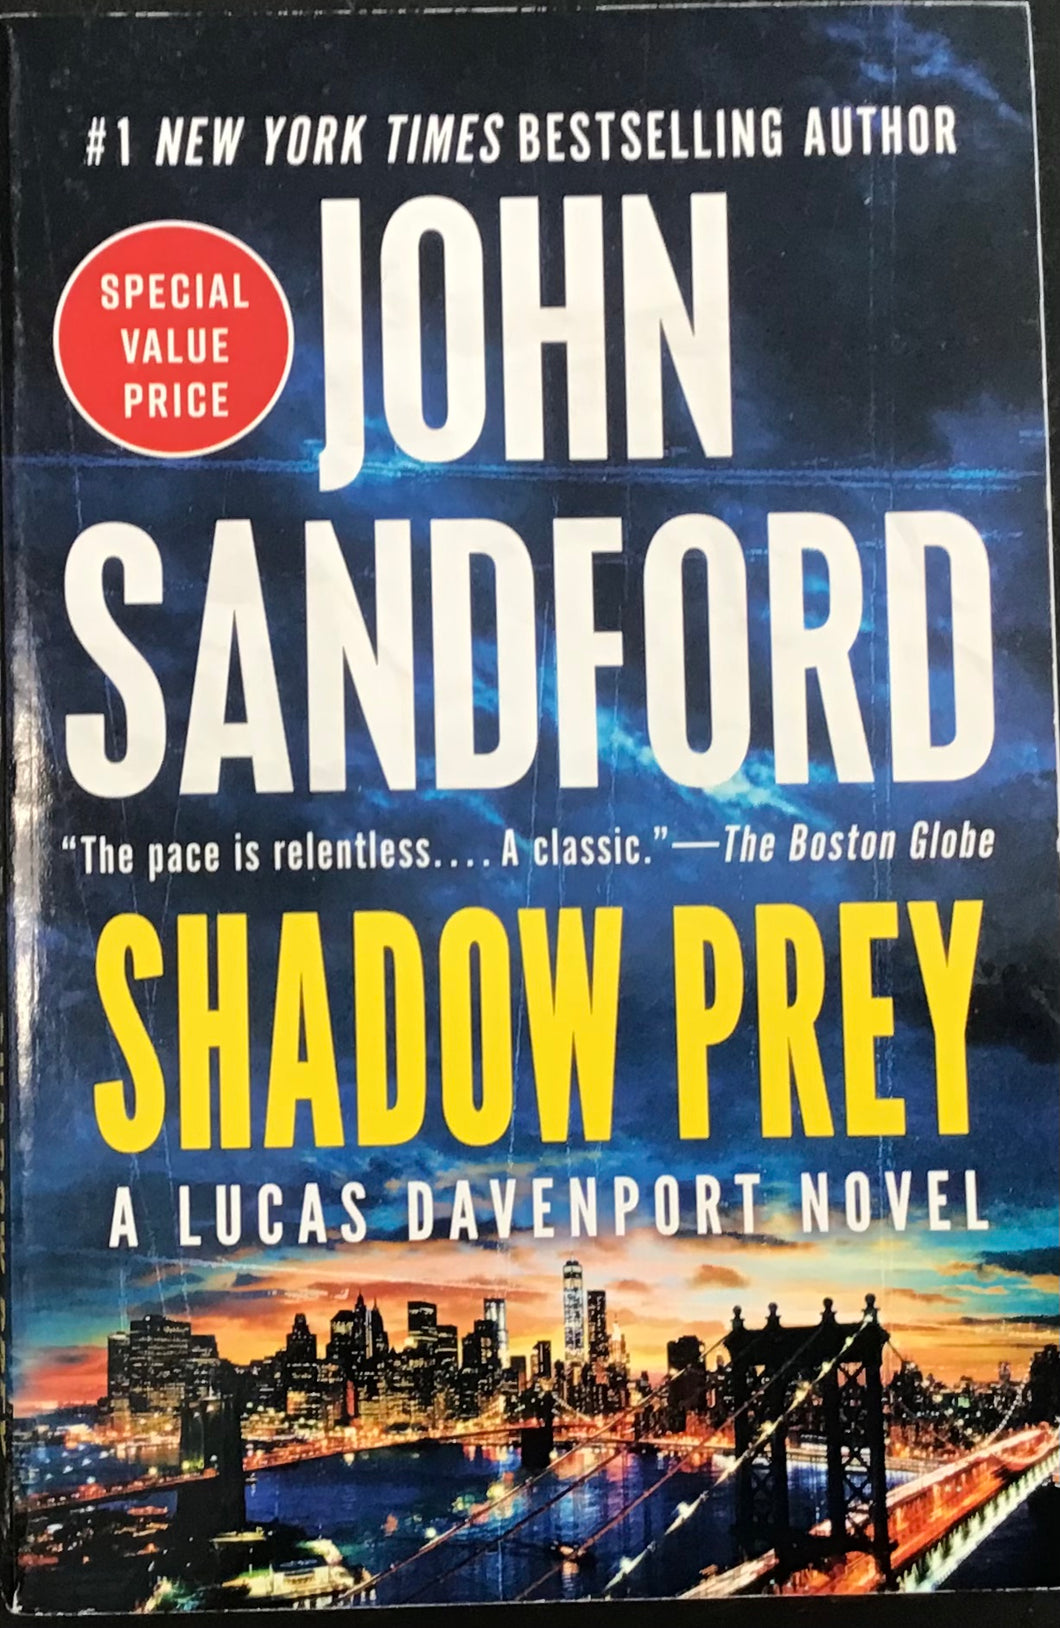 Shadow prey, John Sandford